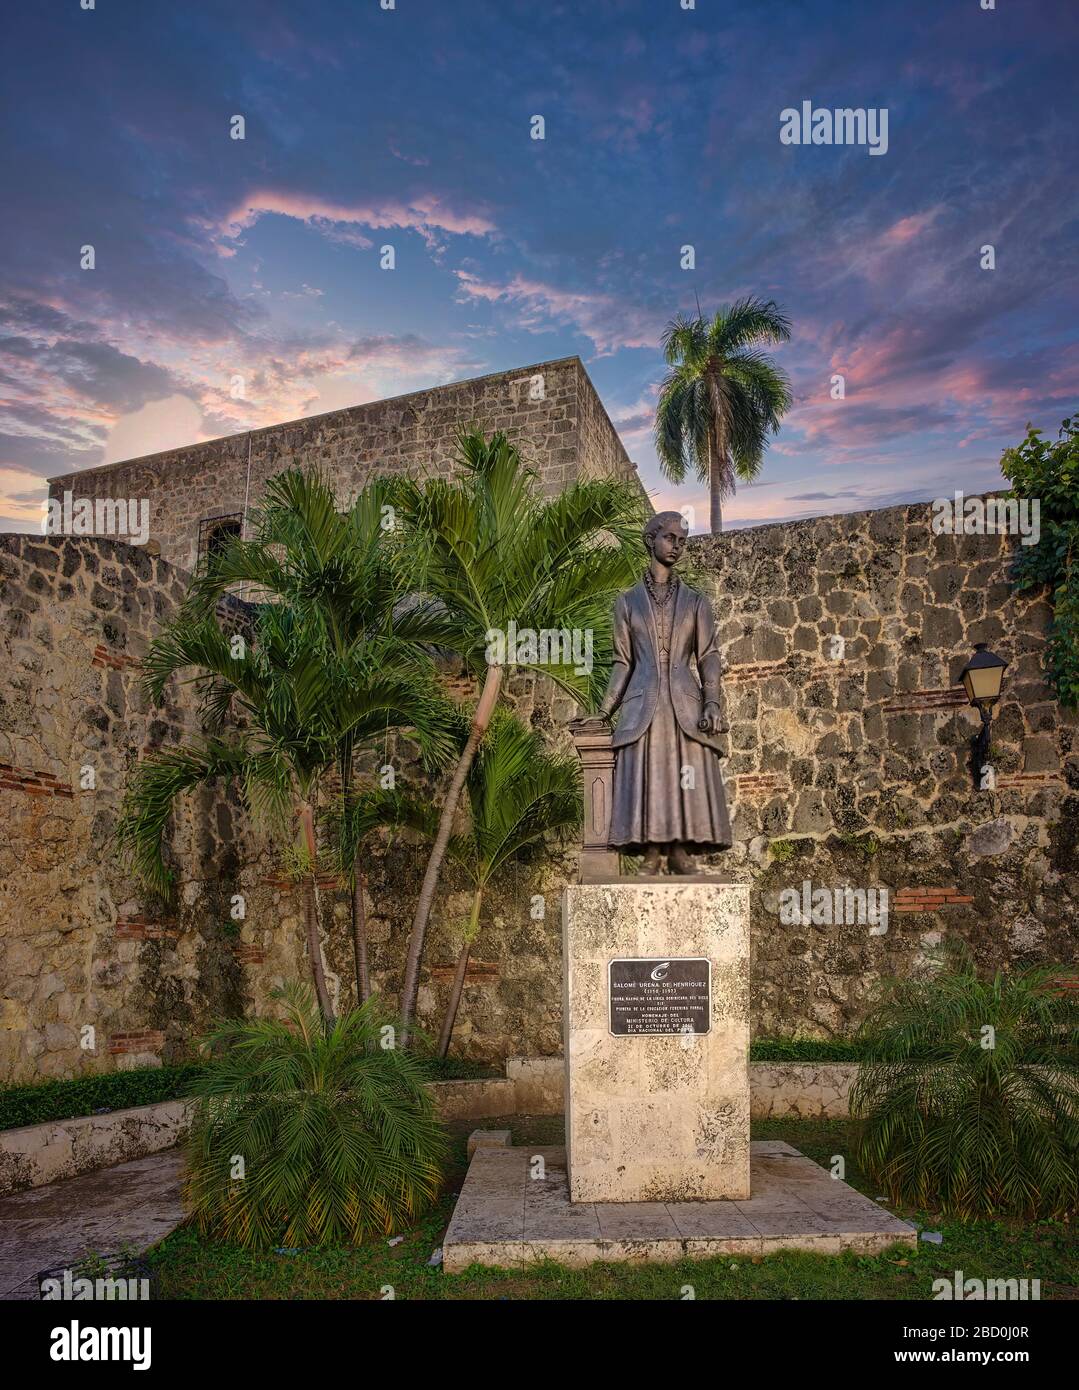 The Statue of Salomé Ureña de Henríquez. Located in the Plaza de la Poesía, colonial area of Santo Domingo, Dominican Republic Stock Photo